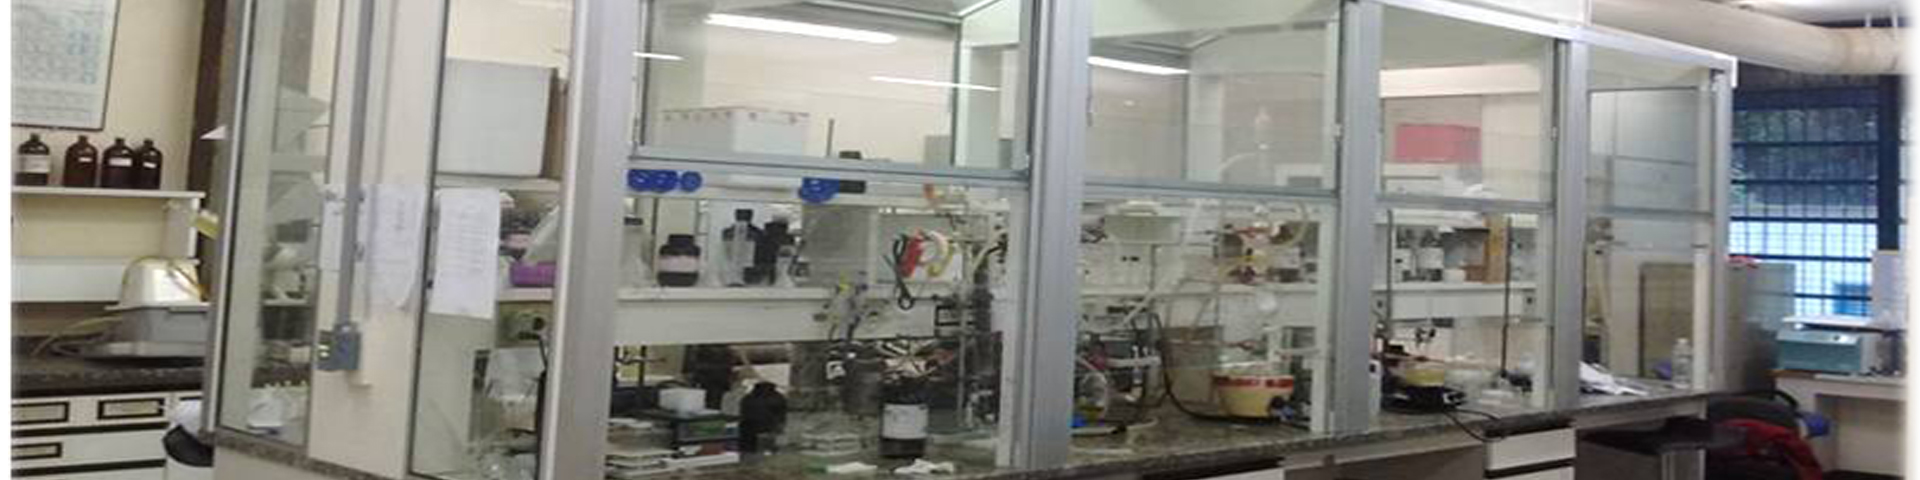 Laboratorio de Metaloenzimas e Biomimeticos